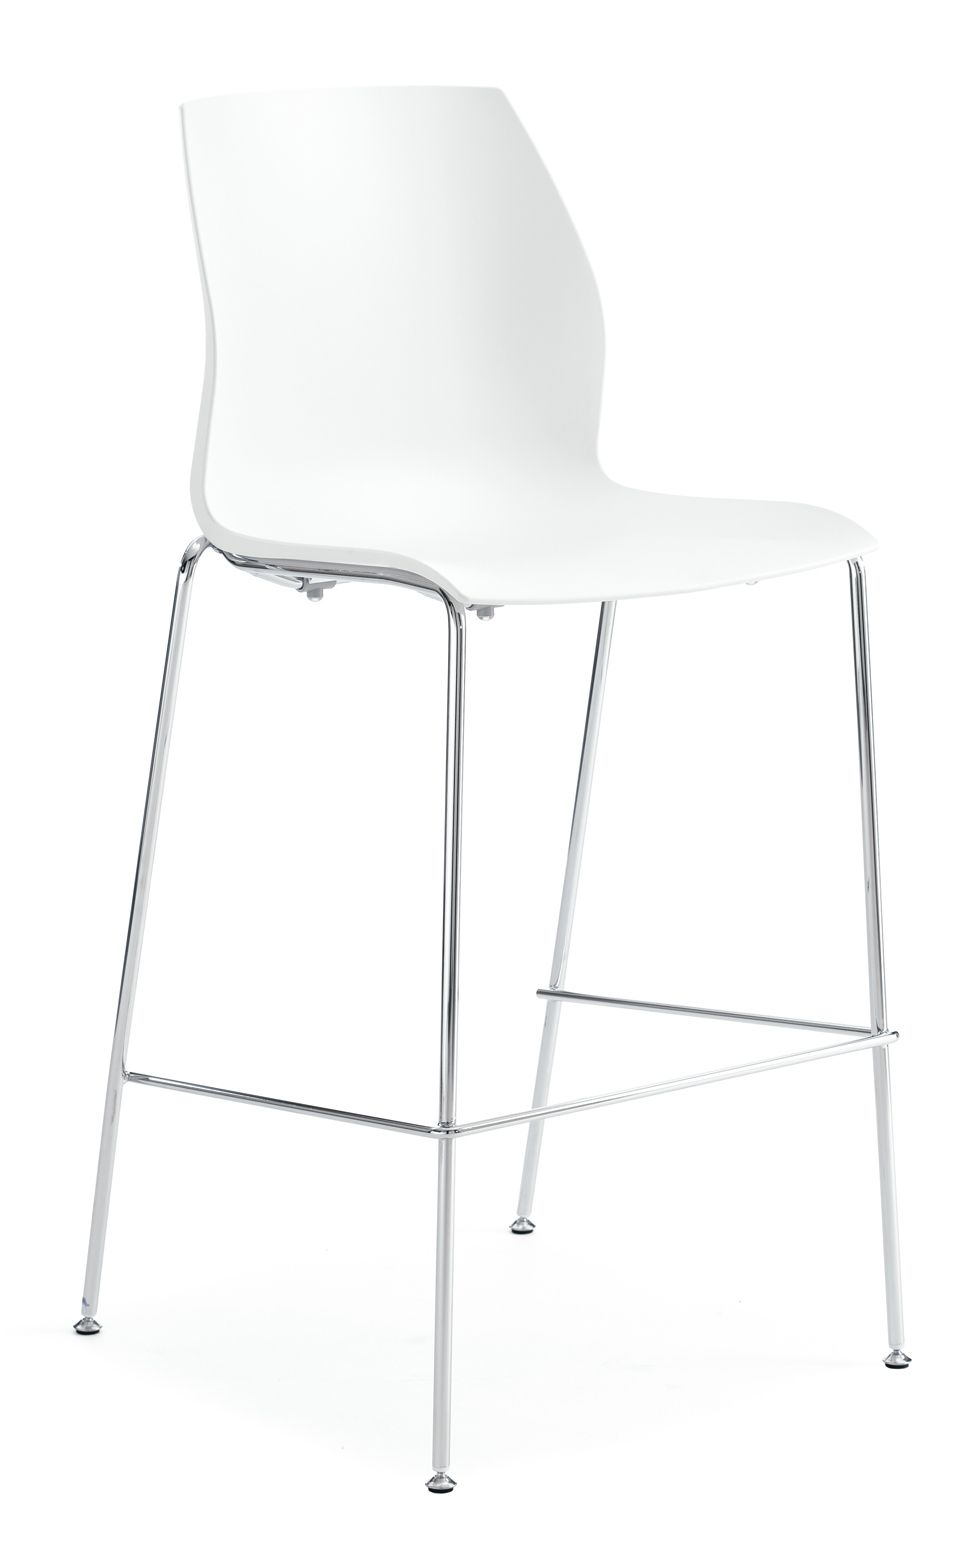 KASTEL - Barová stolička KALEA so štvornohou podnožou